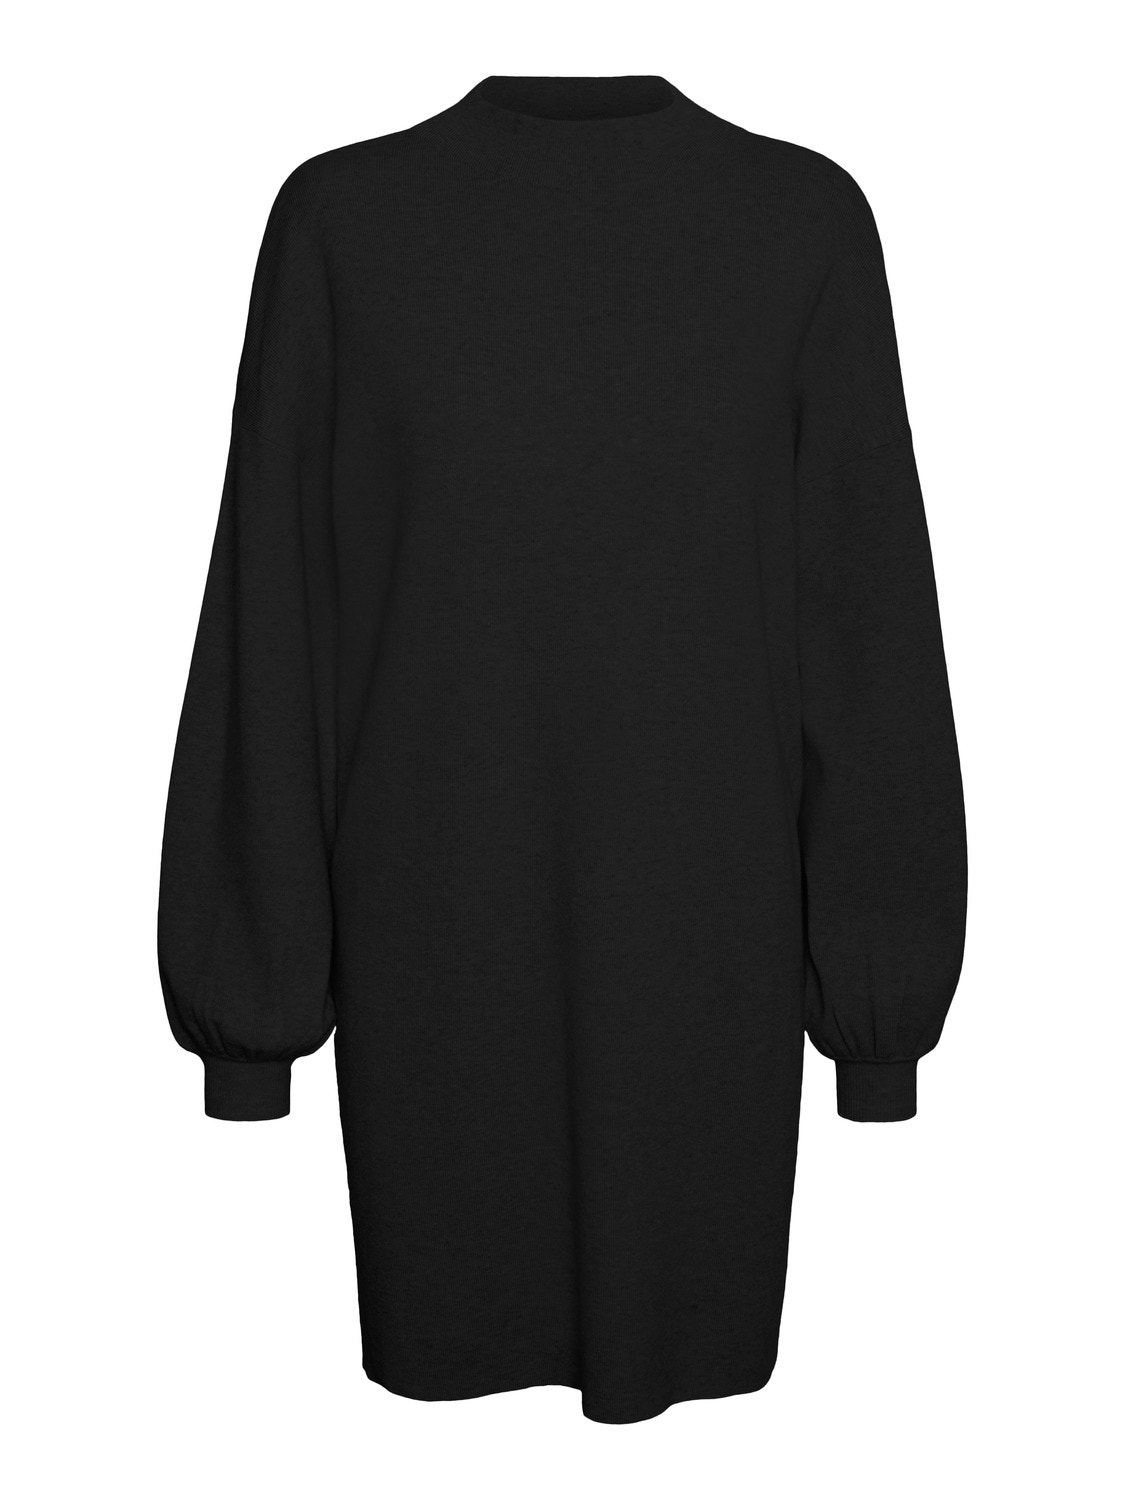 Vero Moda VMNANCY Kort klänning -Black - 10249116